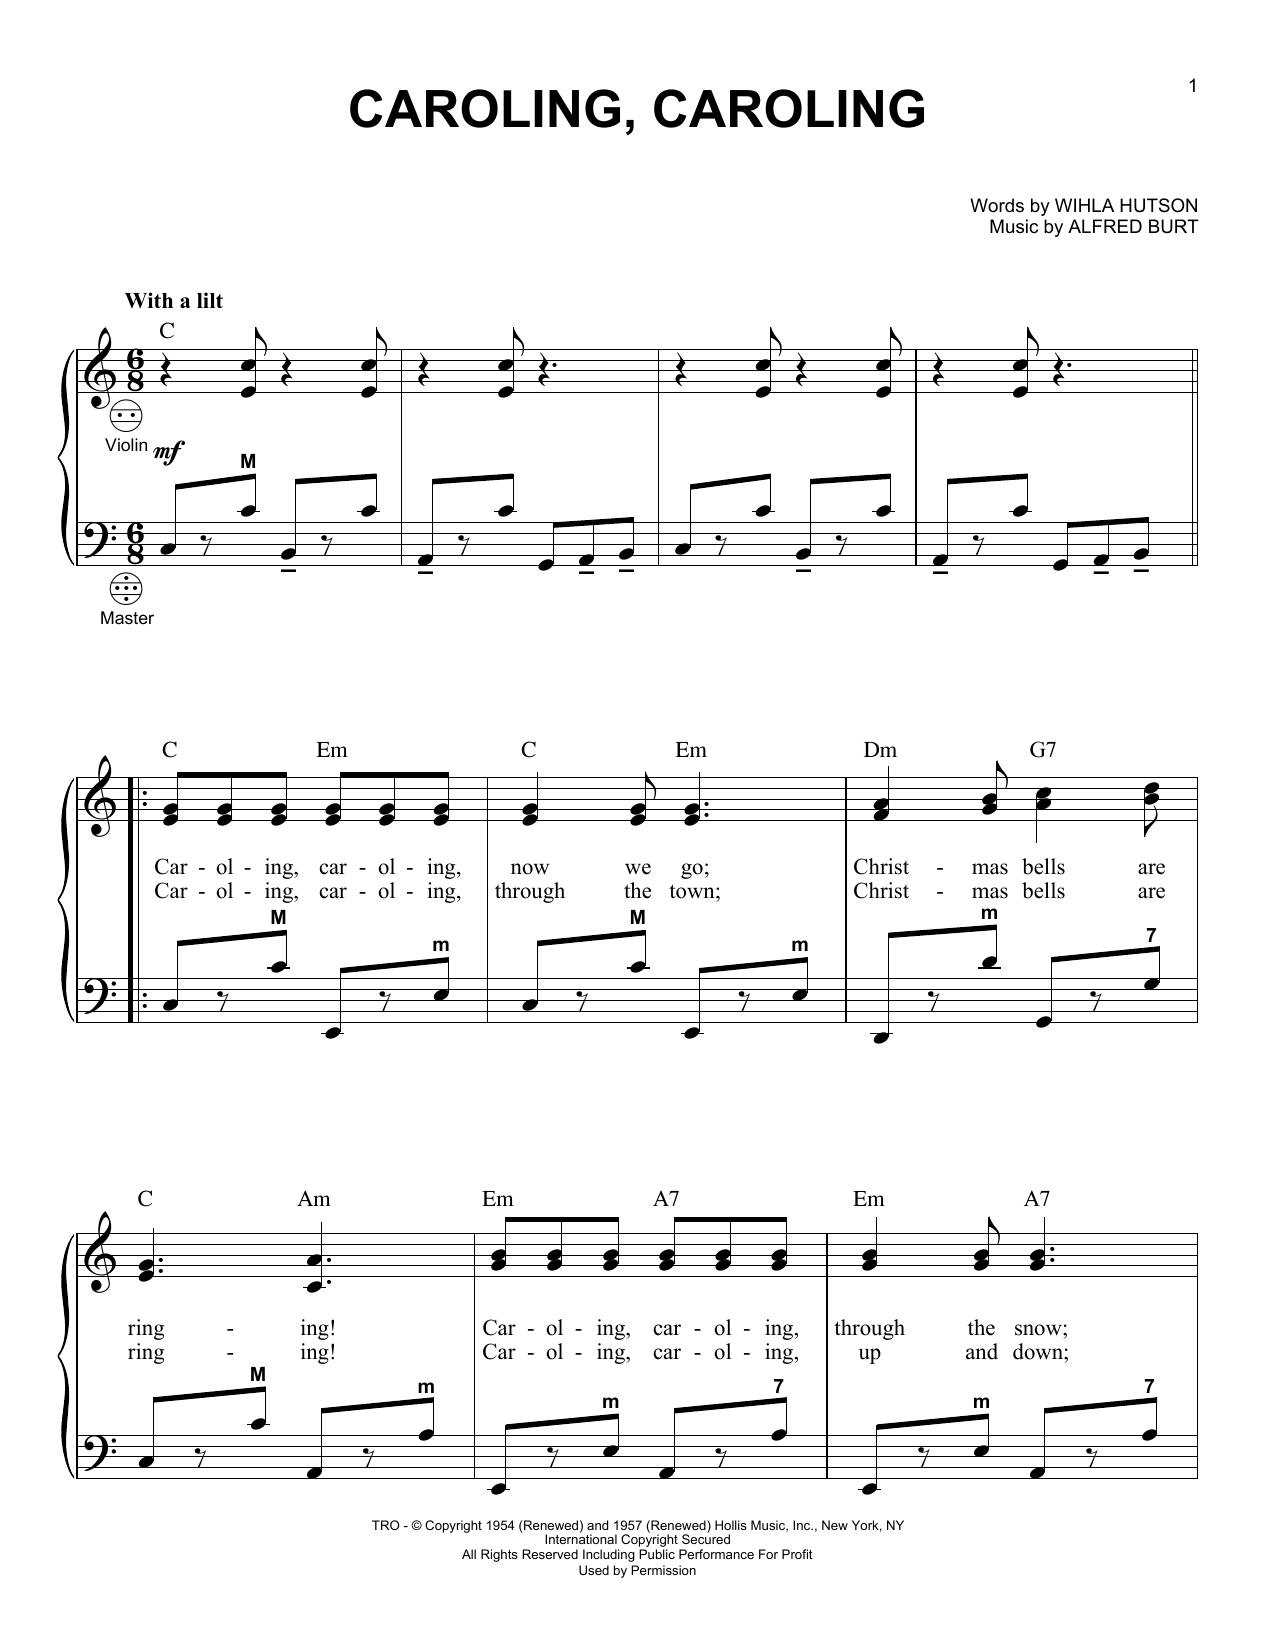 Alfred Burt Caroling, Caroling Sheet Music Notes & Chords for Guitar Tab - Download or Print PDF